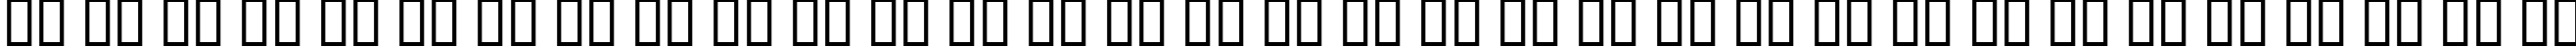 Пример написания русского алфавита шрифтом FrankRuehl